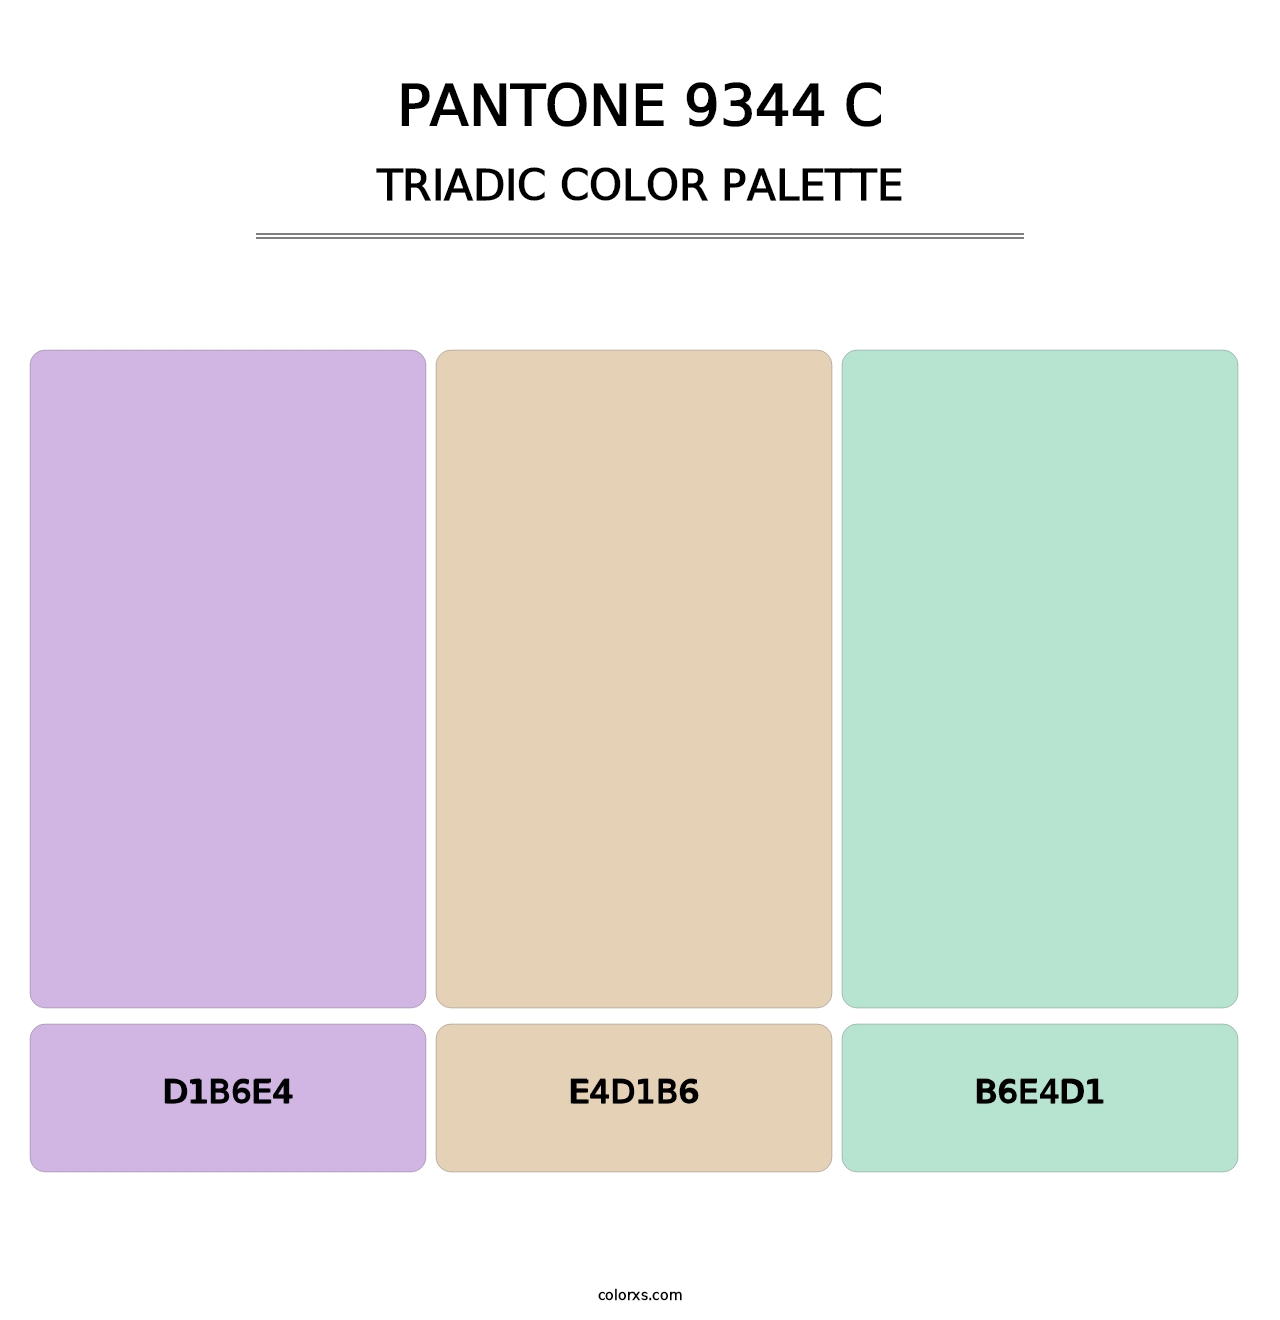 PANTONE 9344 C - Triadic Color Palette